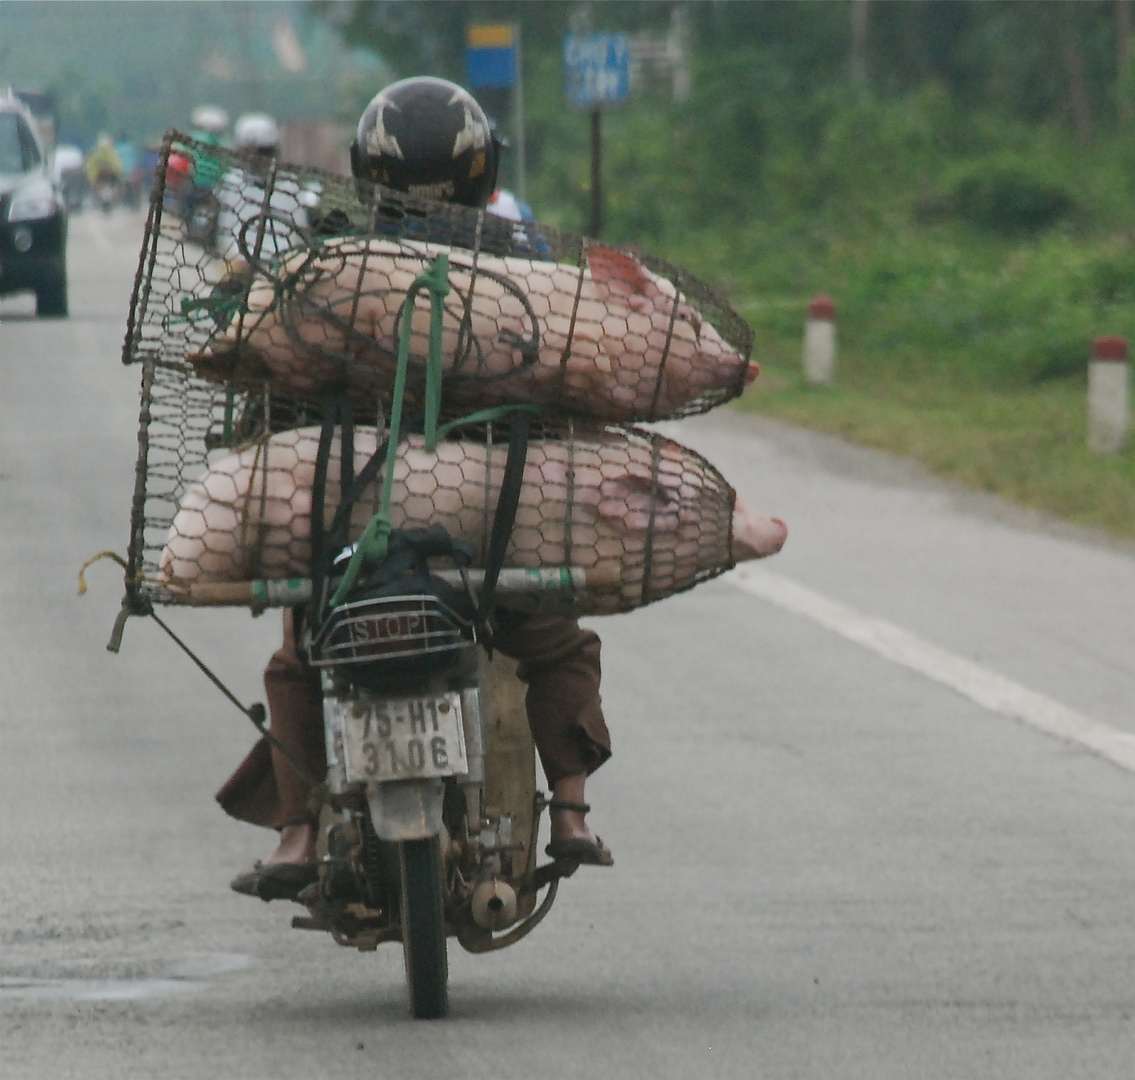 Schweinetransport in Vietnam